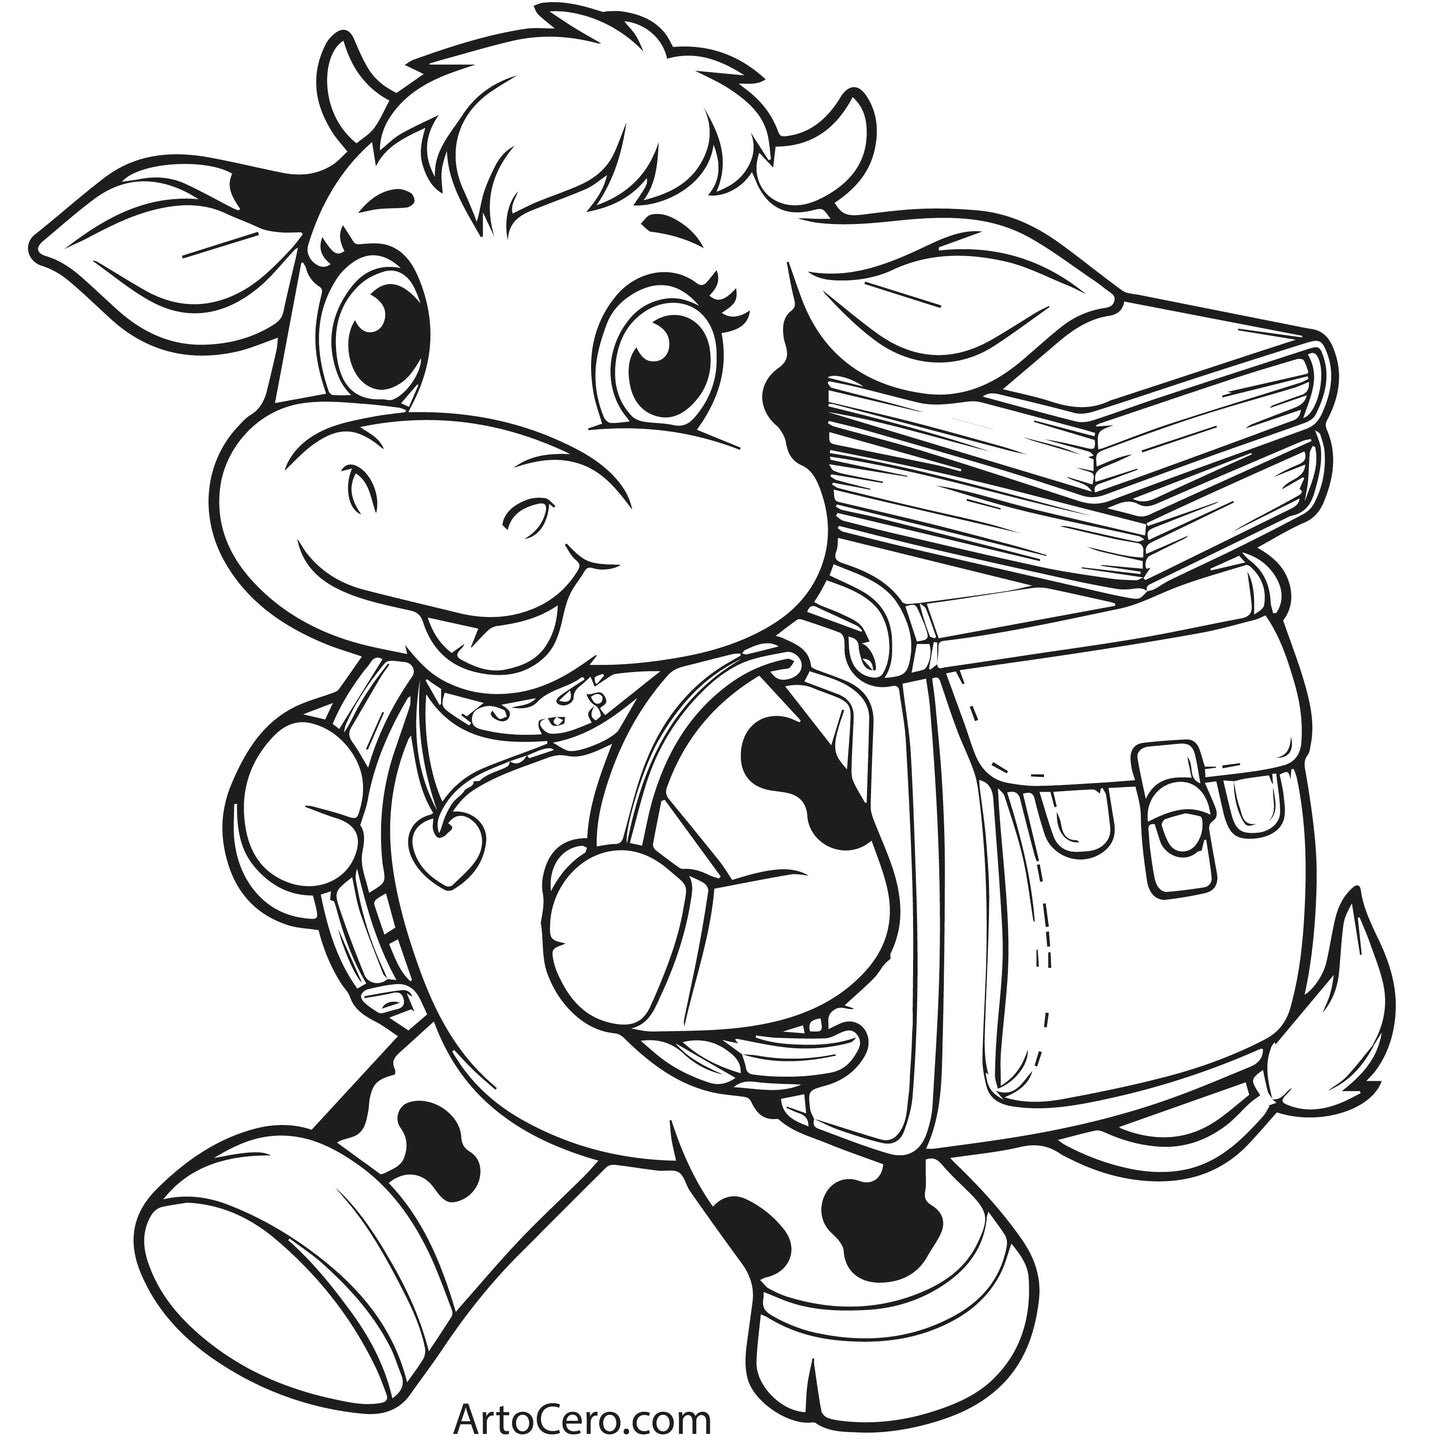 Cow Coloring Digital Book Vol.1 - ArtoCero.com